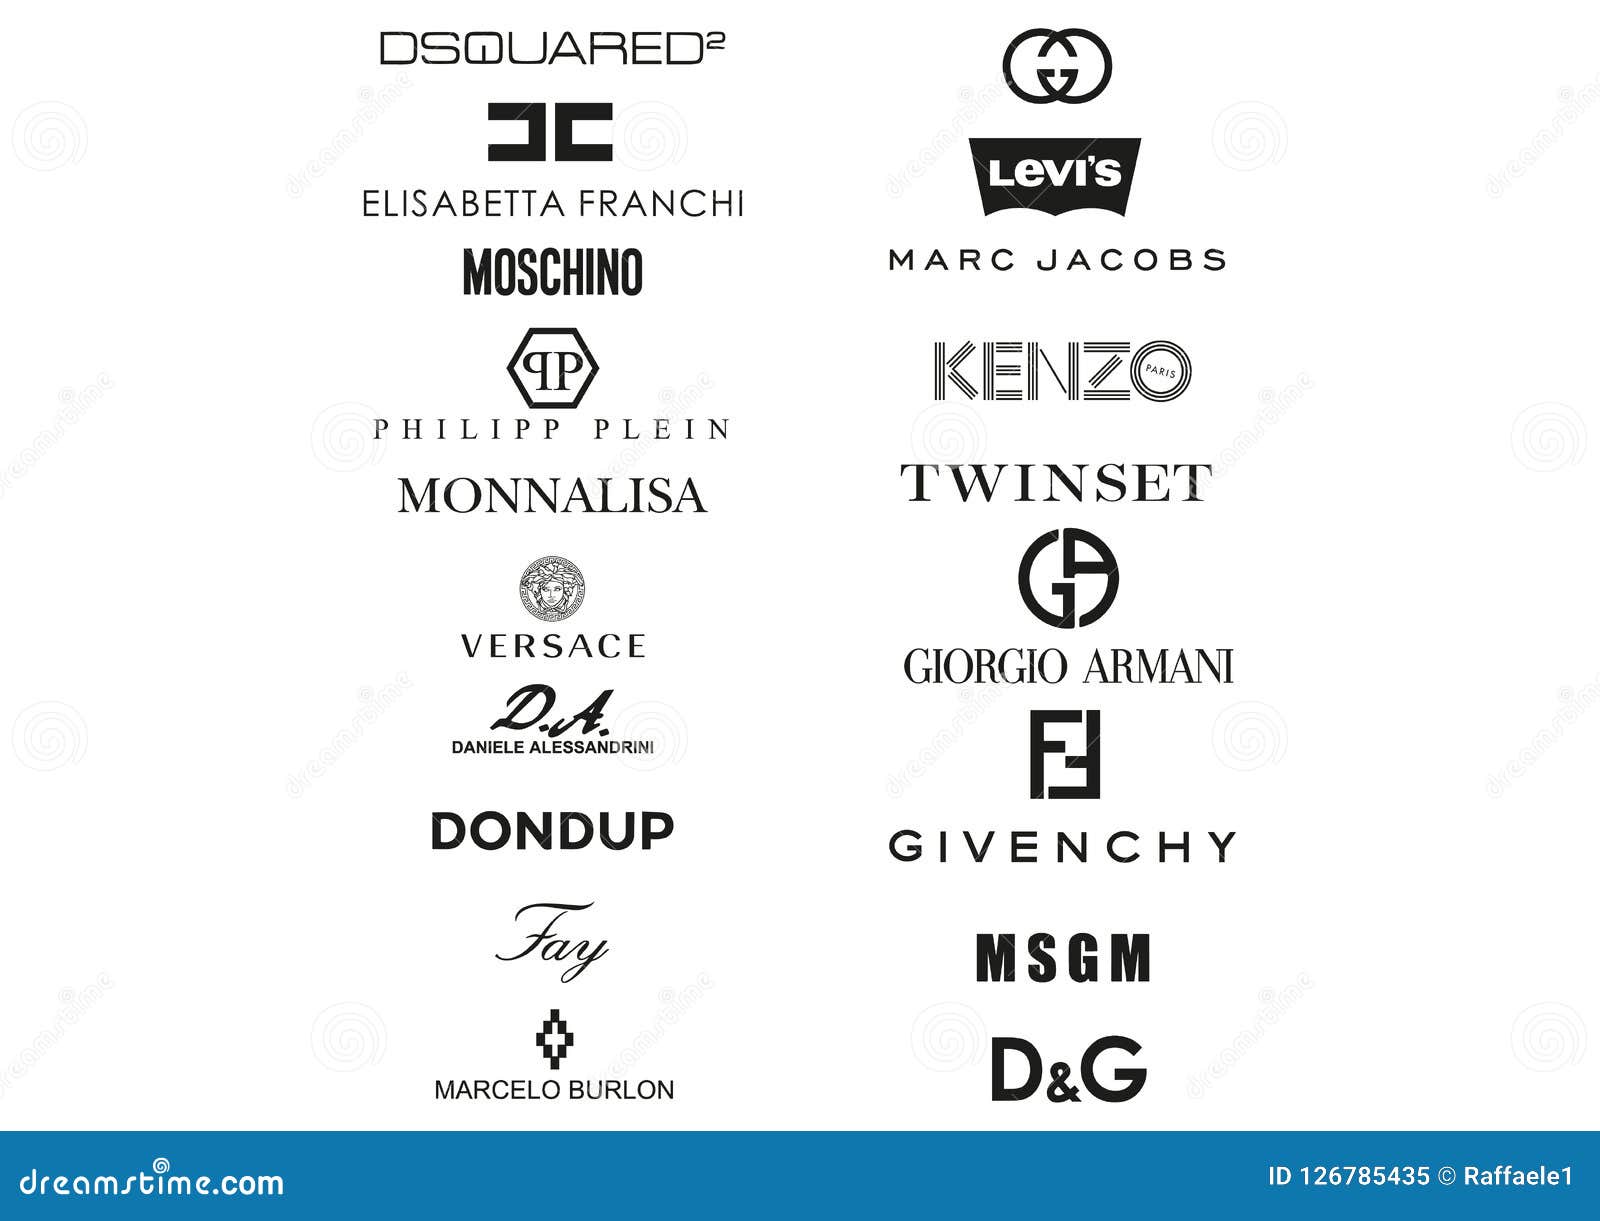 Diagramm Gepard Strand las marcas de ropa mas famosas del mundo ...